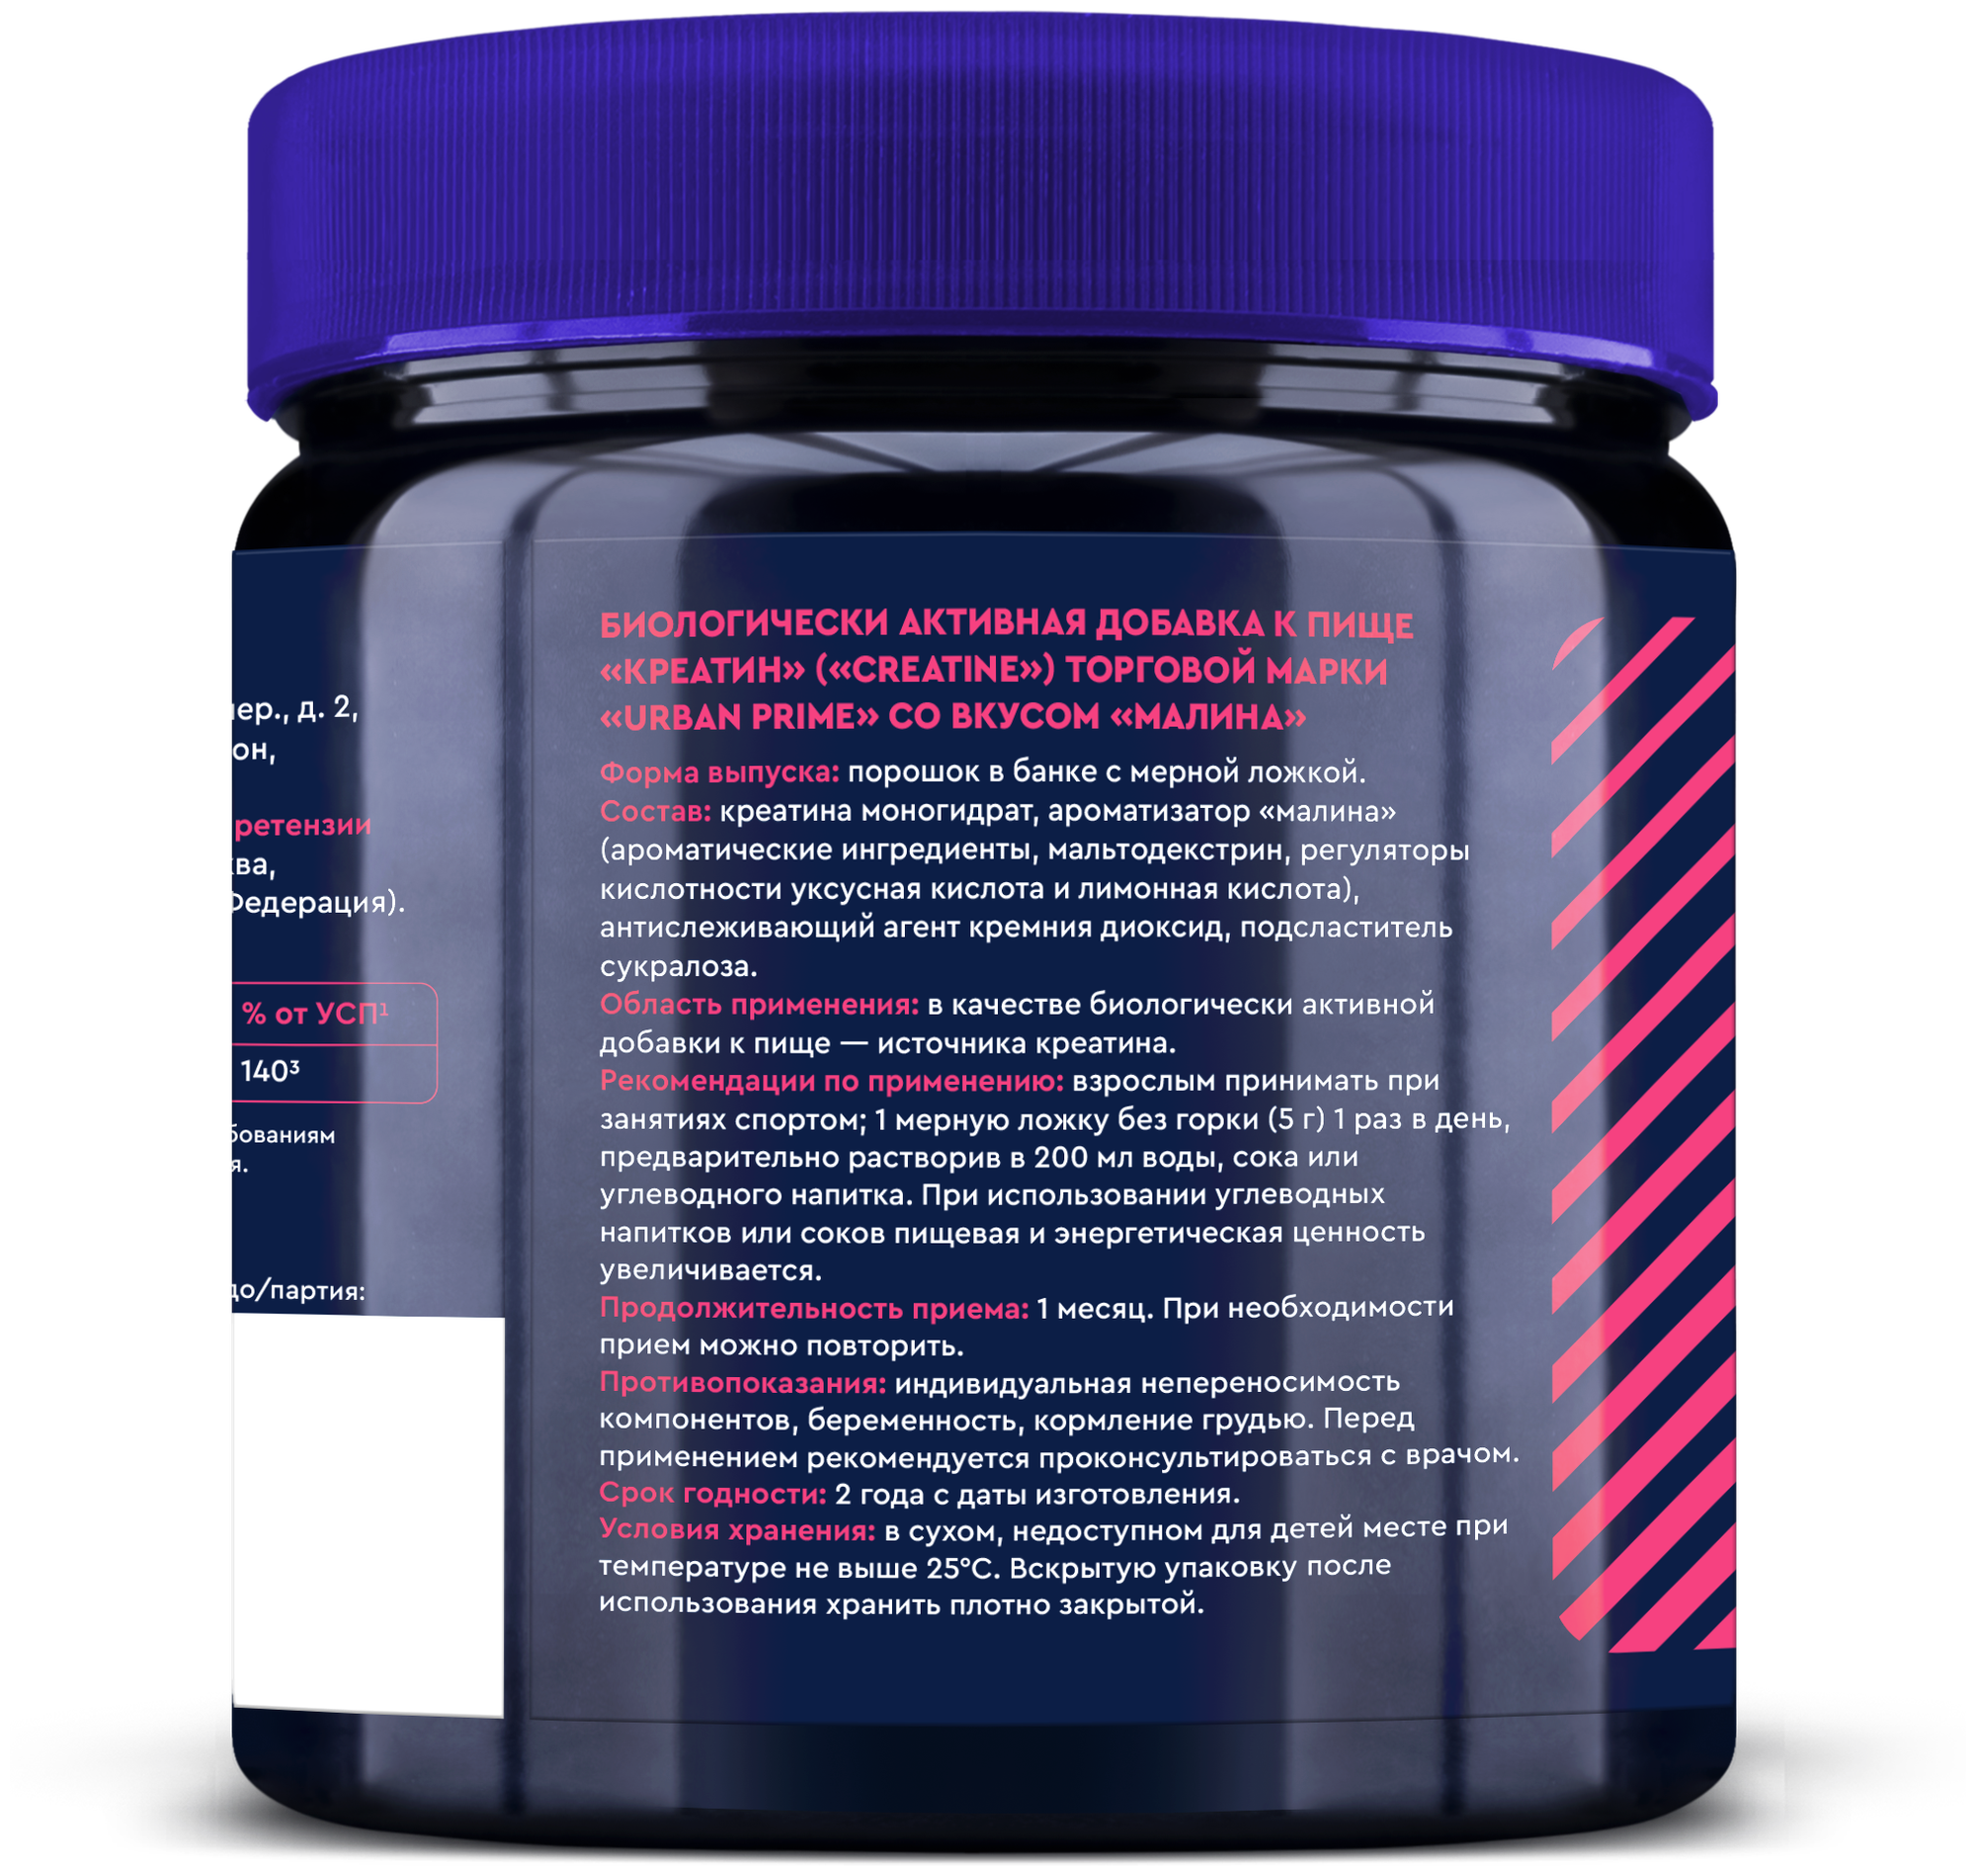 Креатин моногидрат порошок/Creatine Monohydrate, аминокислота / спортивное питание для набора массы и роста мышц, без сахара со вкусом малина, 150 гр